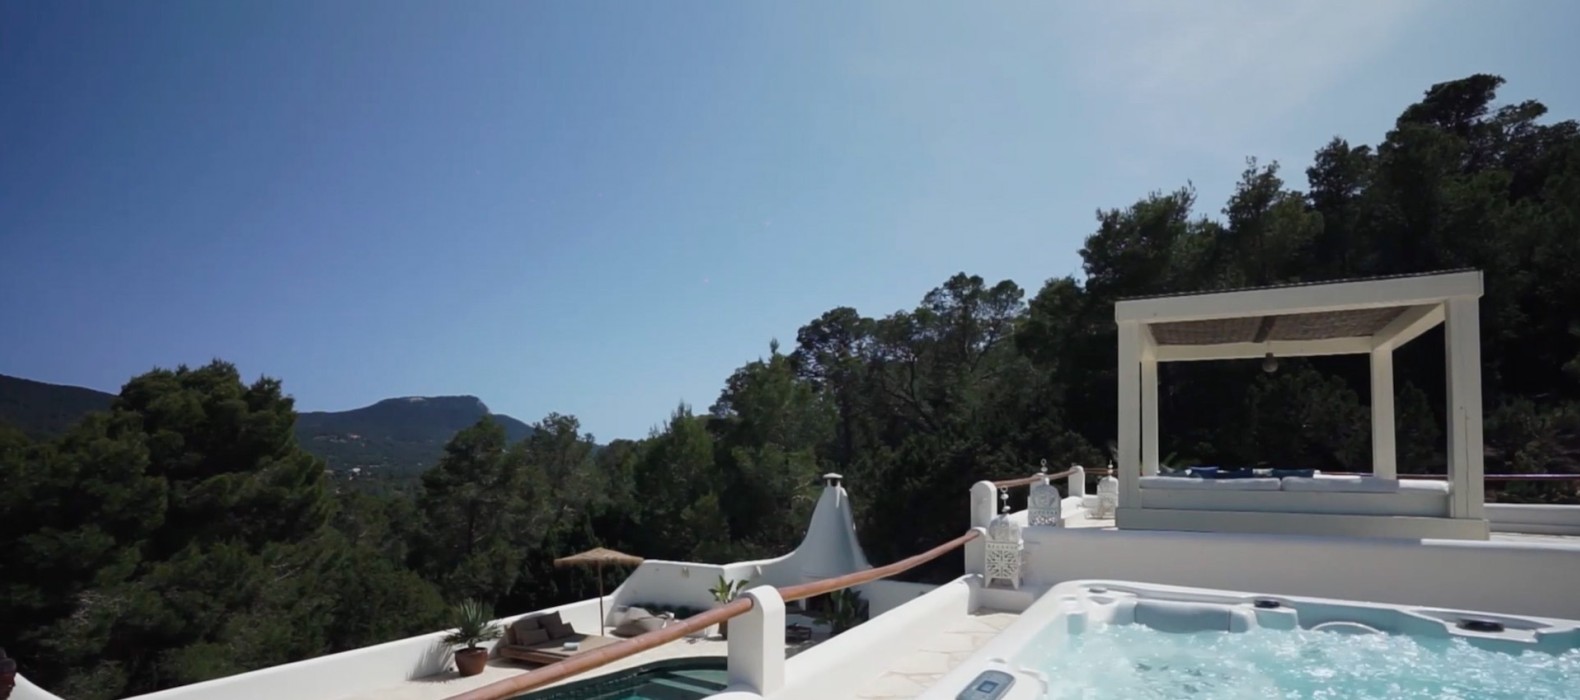 Whirlpool of Villa La Colina in Ibiza